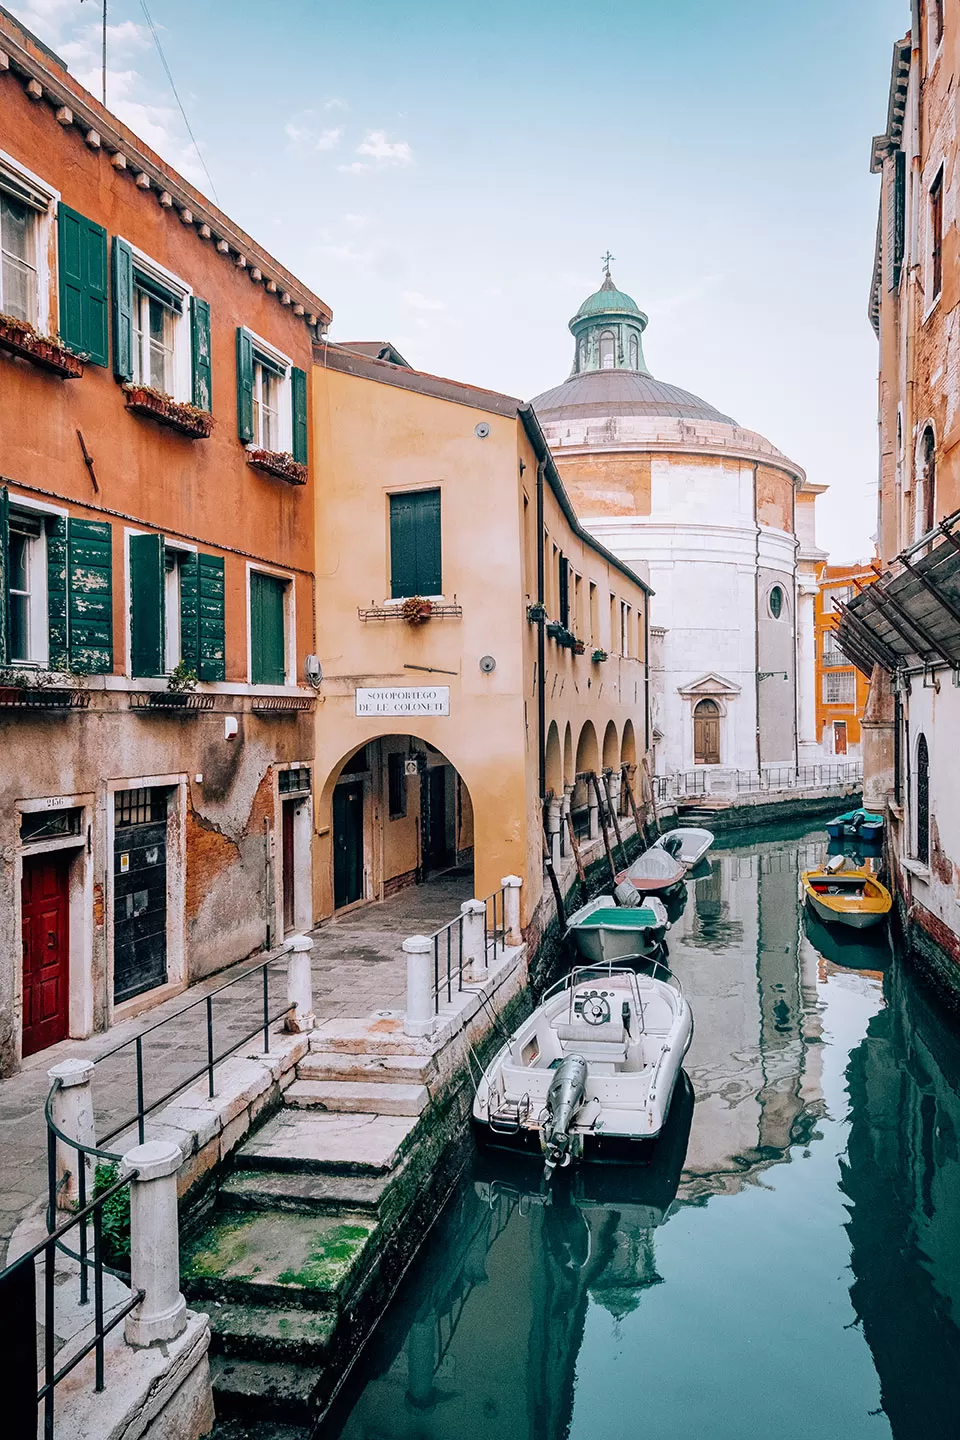 Where to Stay in Venice - Best Hotels in Venice - Cannaregio - Fondamenta de le Colonete